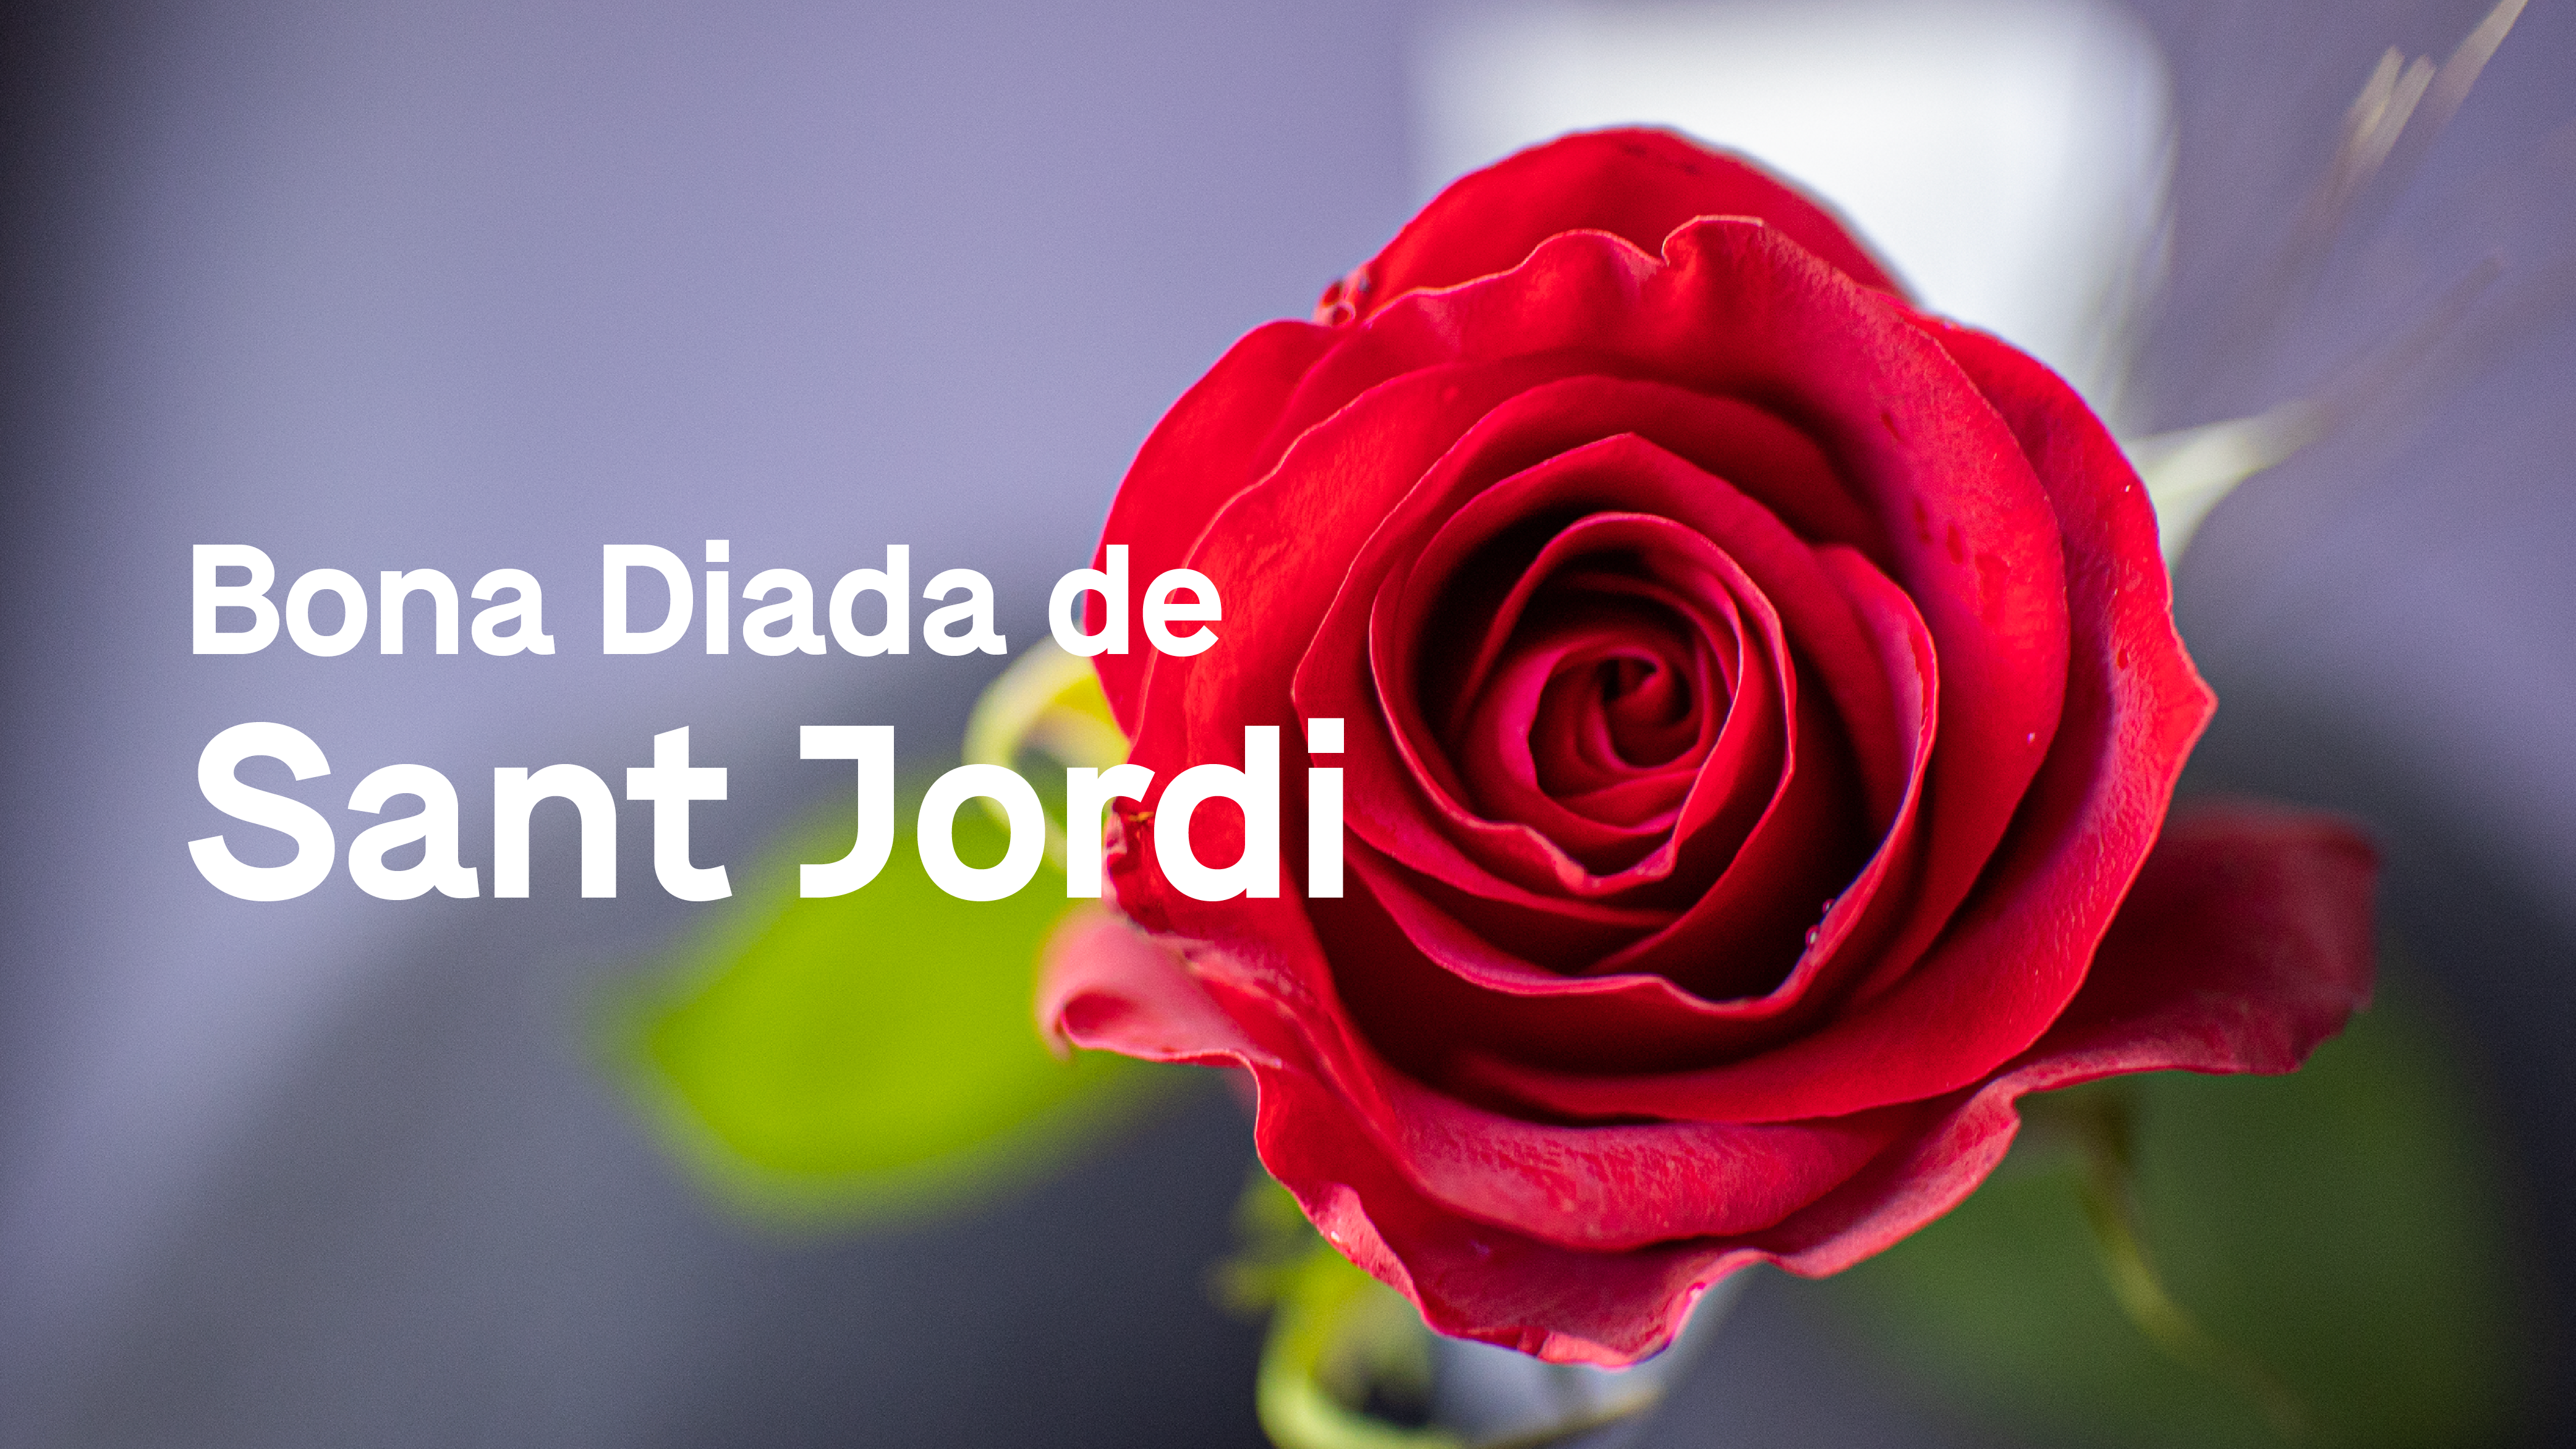 015_Bona Diada de Sant Jordi